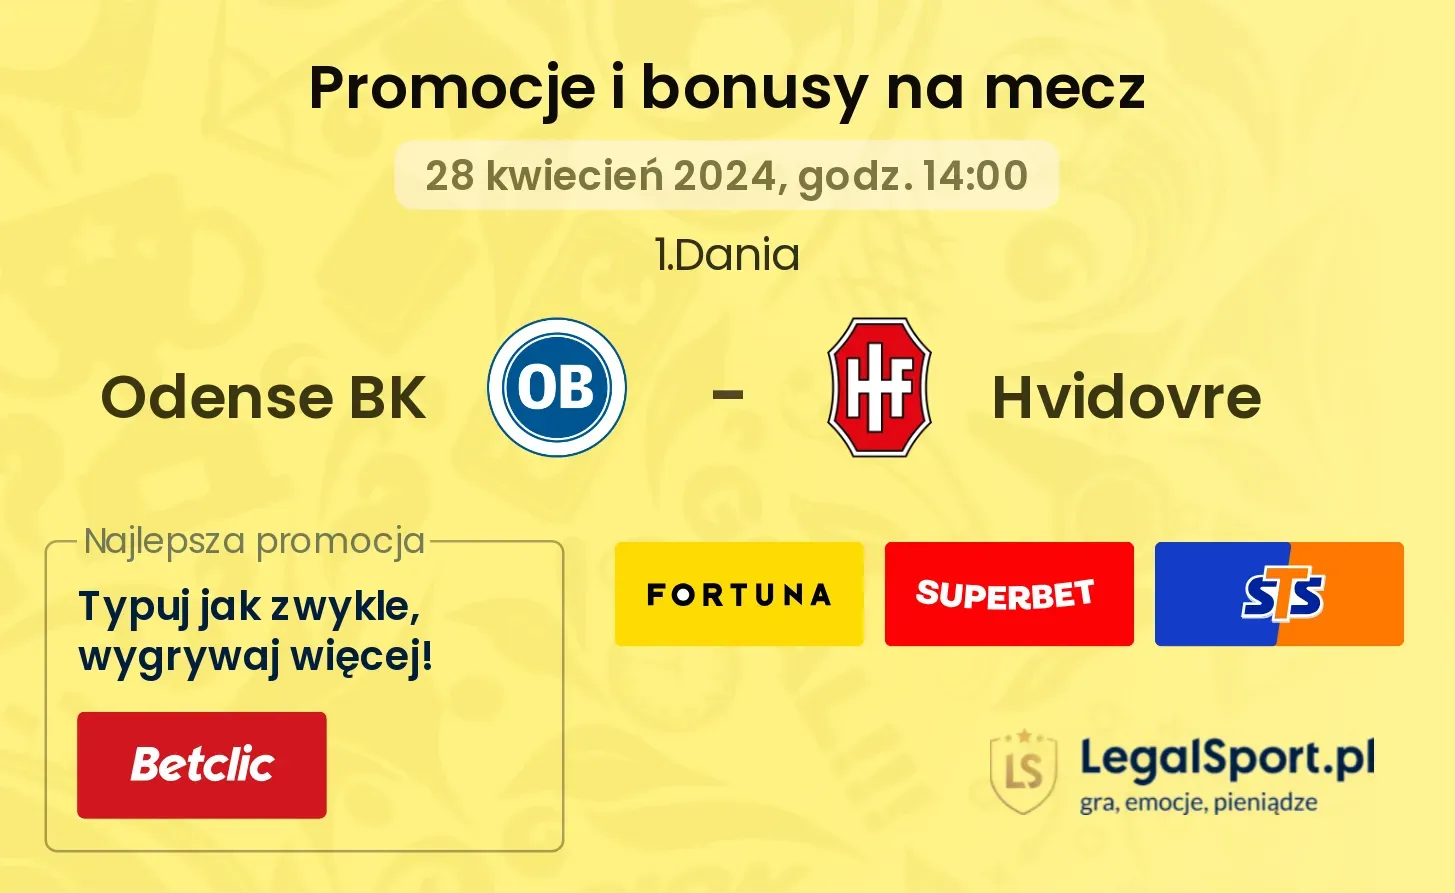 Odense BK - Hvidovre promocje bonusy na mecz